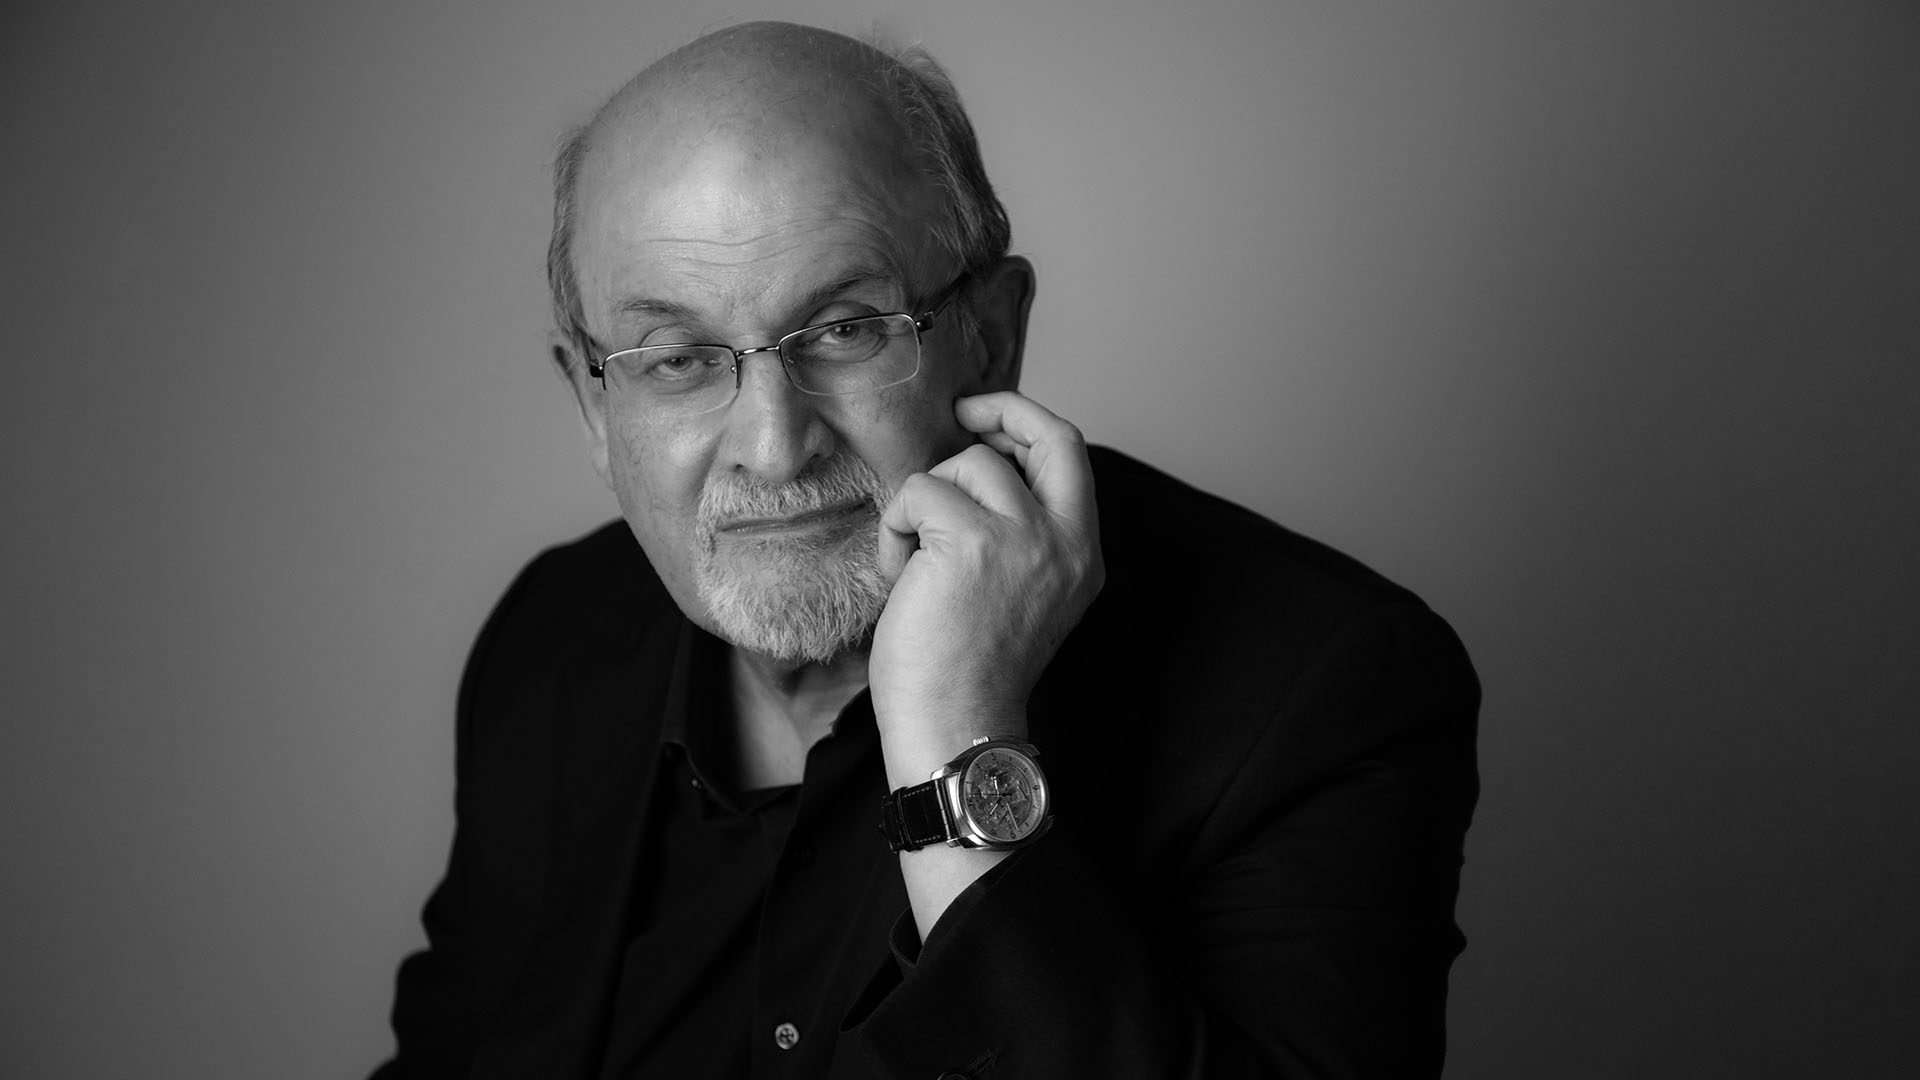 Salman Rushdie's headshot